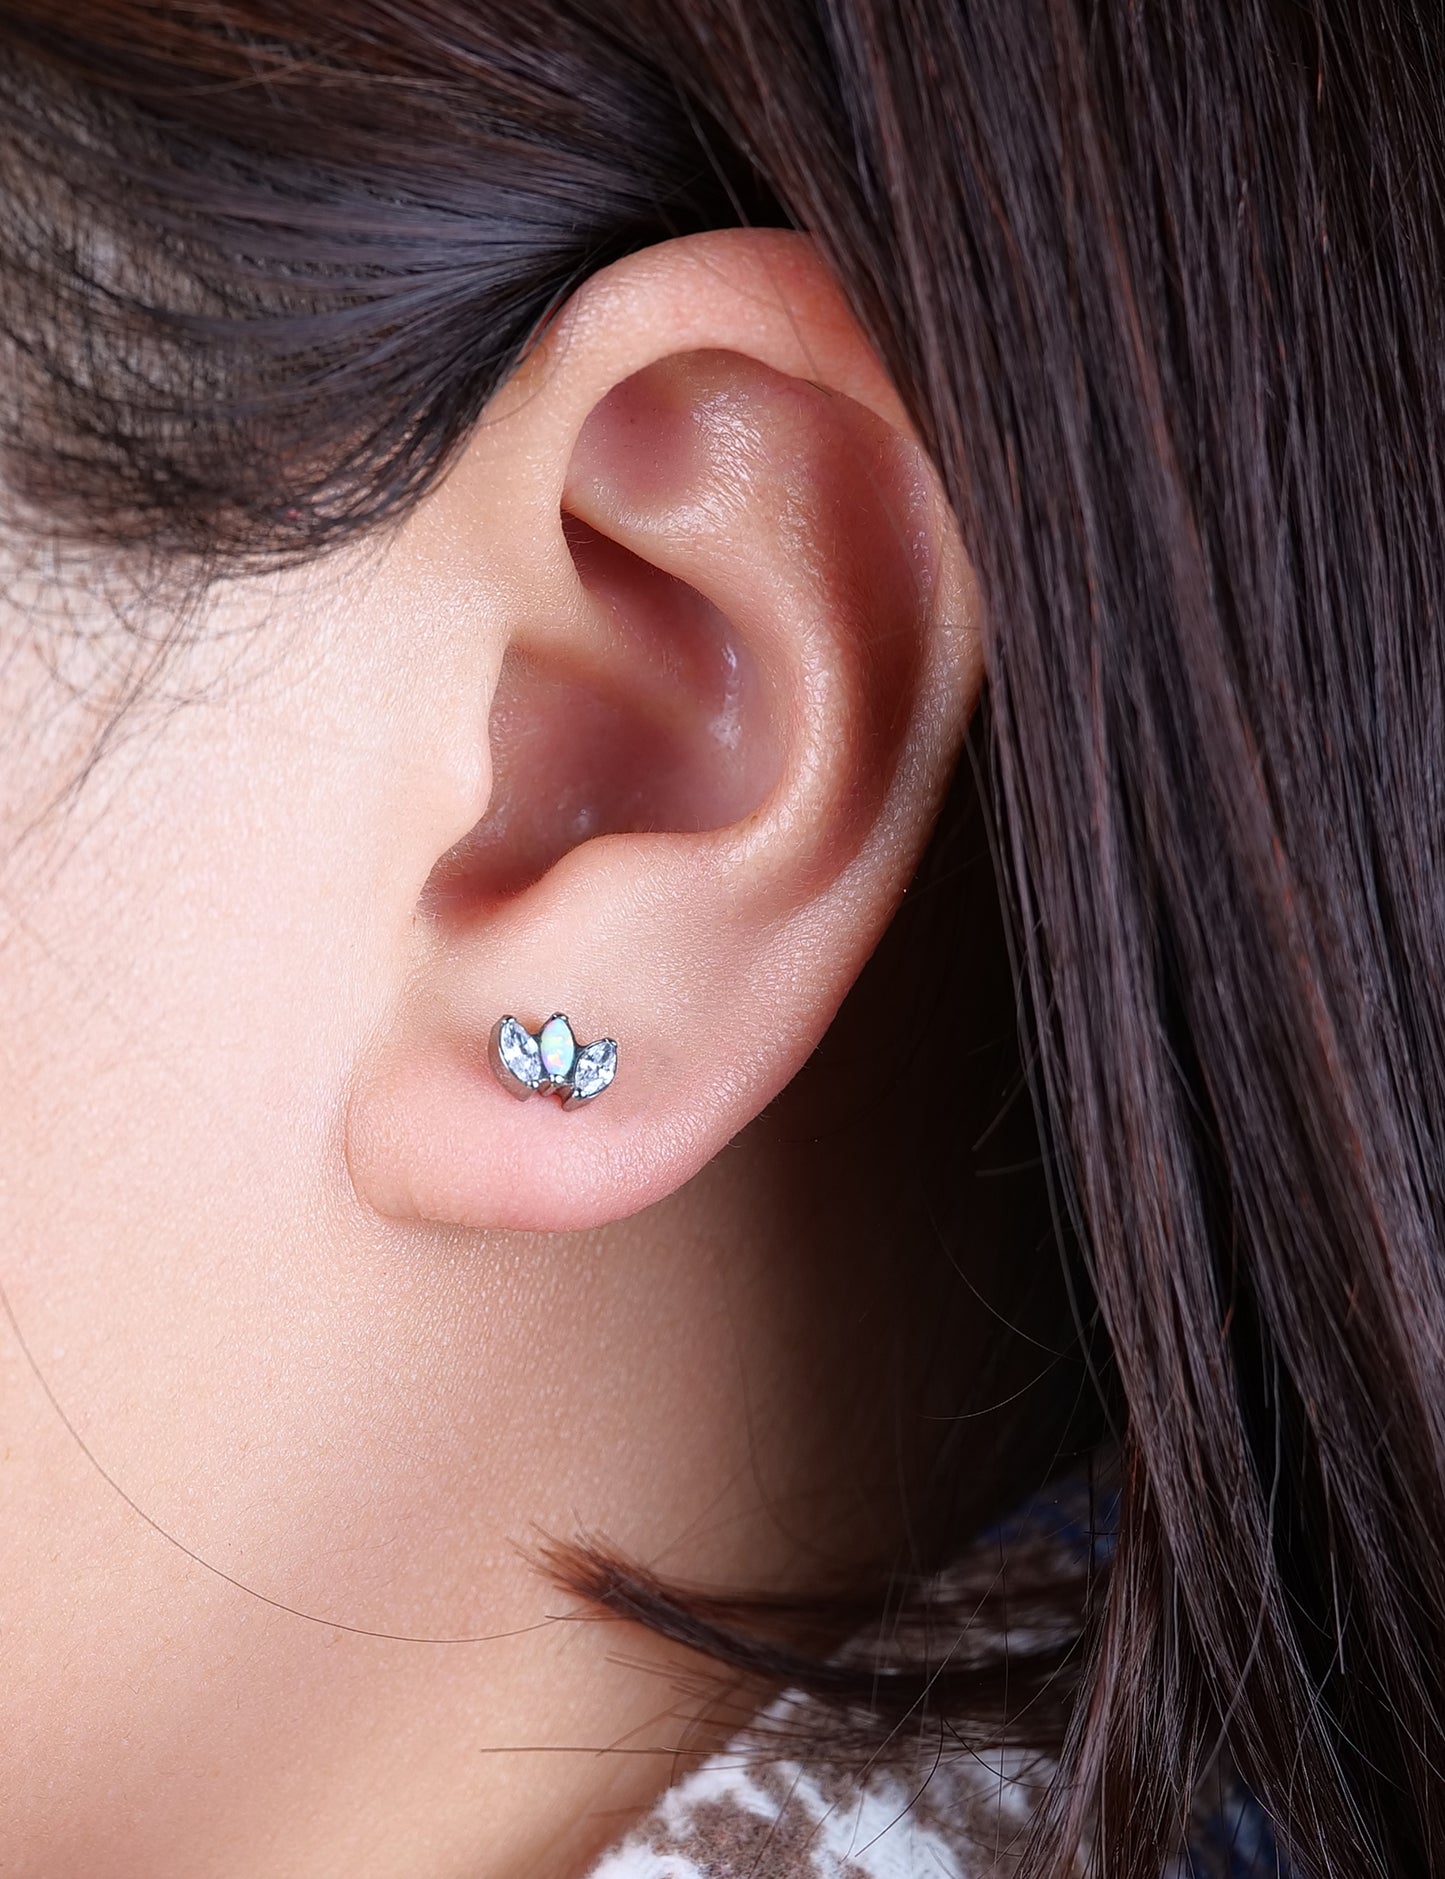 Pendientes hipoalergénicos de titanio puro Limerencia | Ópalo blanco + corona de circonita blanca | Joyería de perforación de grado de implante | Adecuado para orejas sensibles. Joyería delicada.